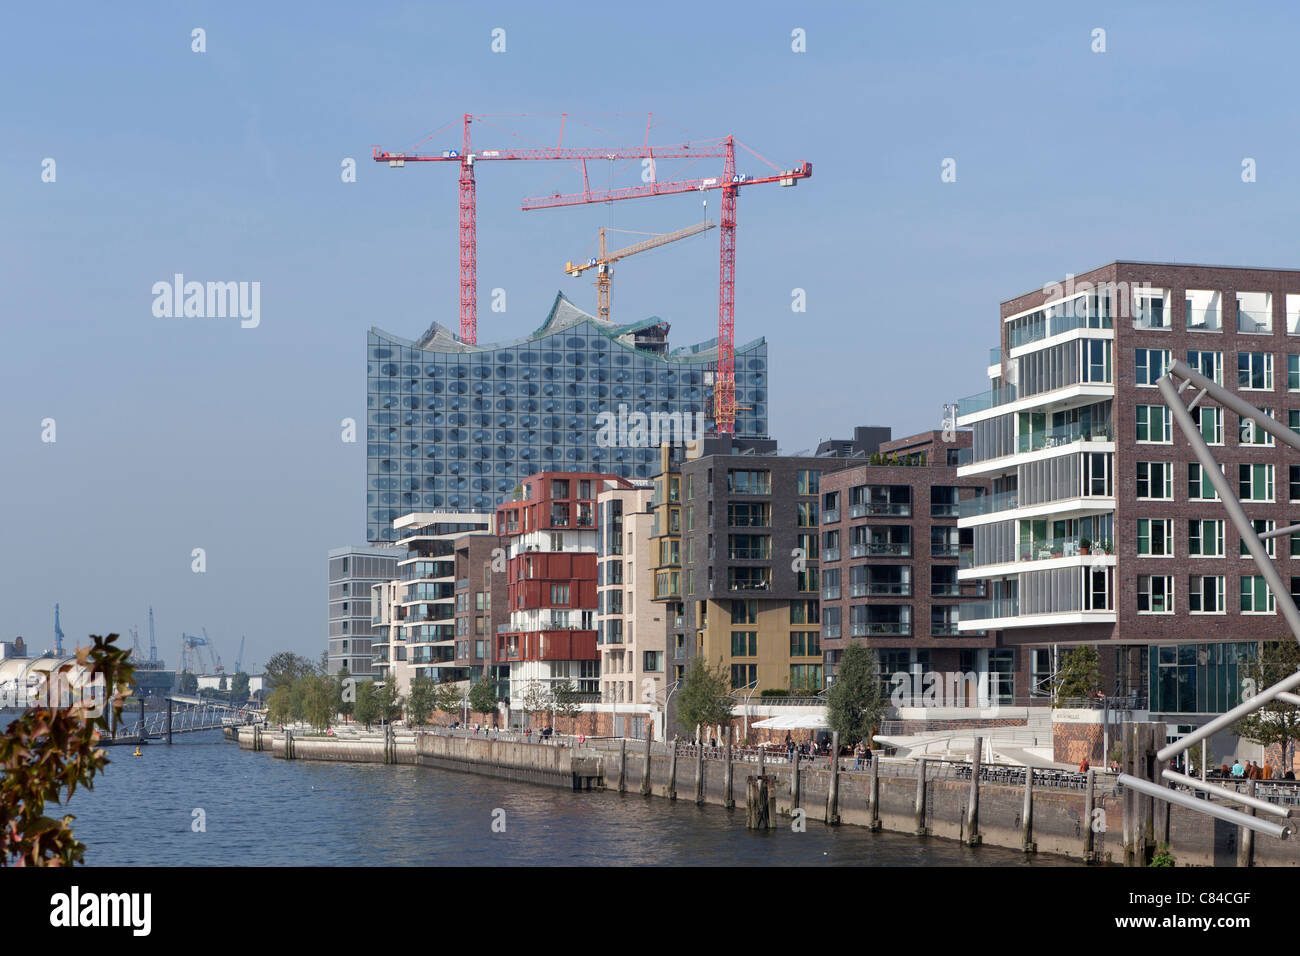 Elbphilharmonie et Kaiserkai, Hafencity (Harbour City) , Hambourg, Allemagne Banque D'Images